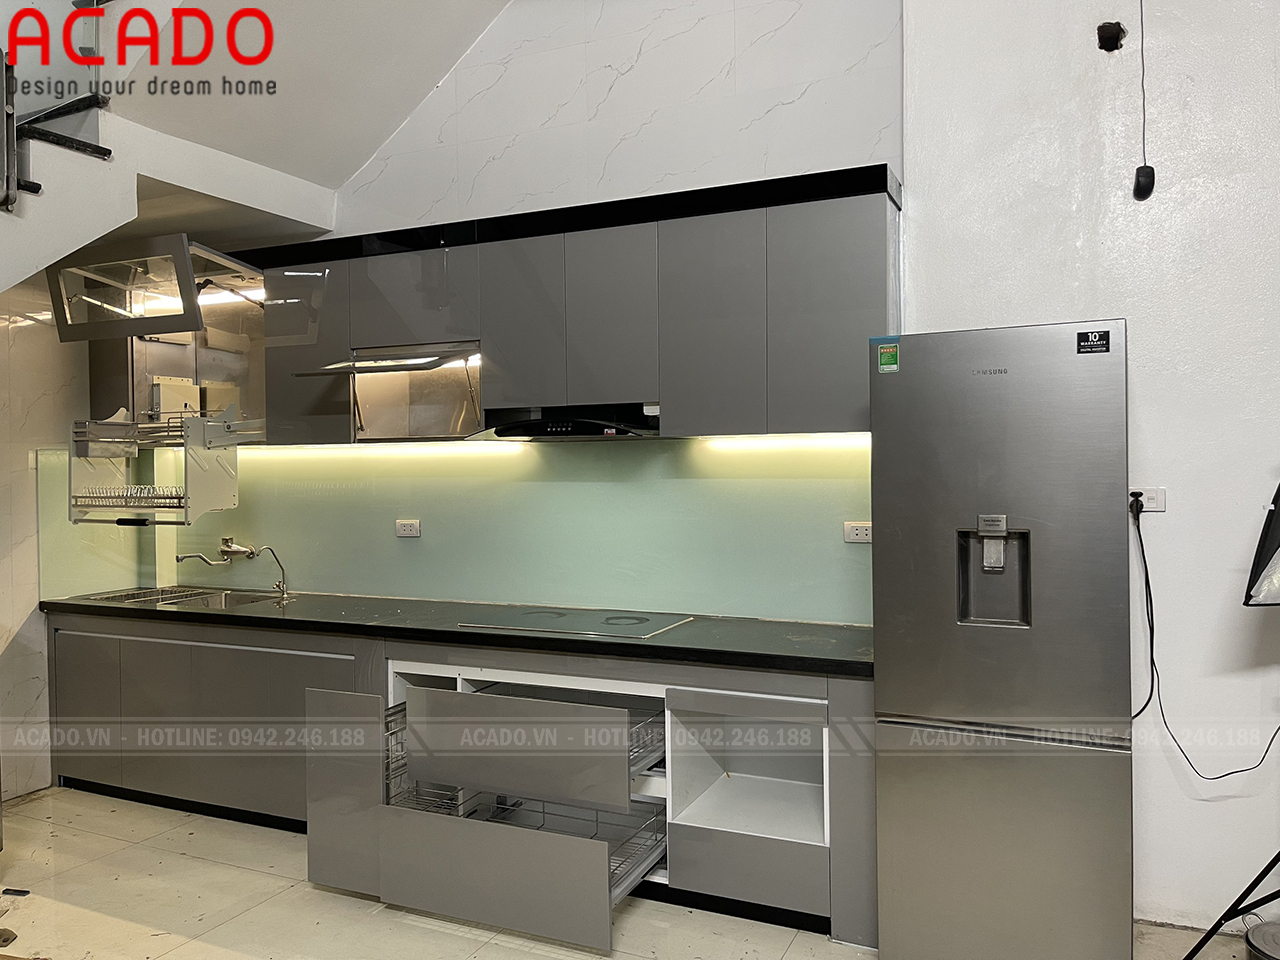 Kính bếp xanh trắng kết hợp hệ thống đèn led tăng thêm vẻ đẹp tủ bếp